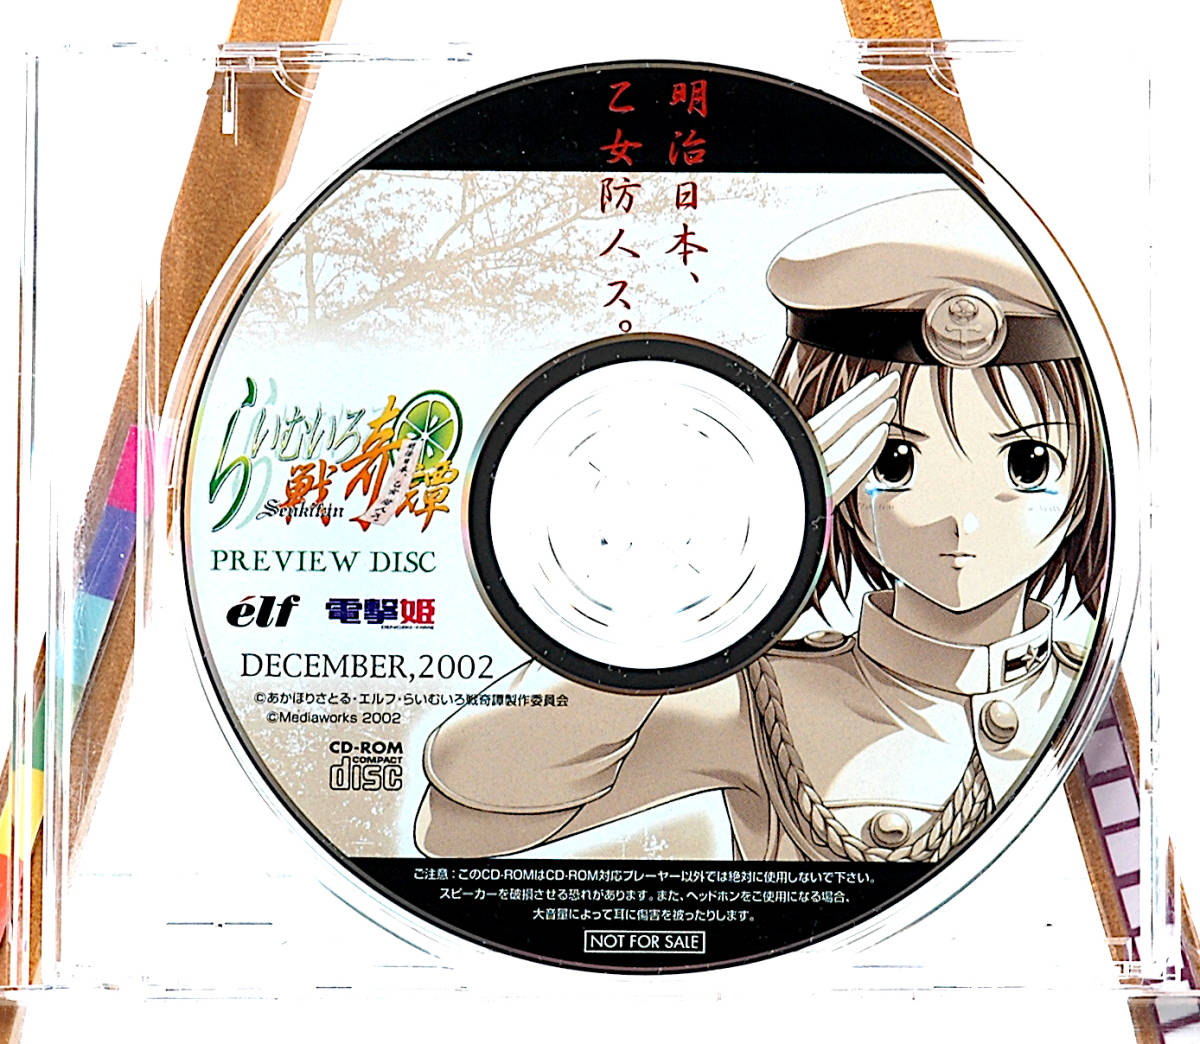 雑誌で紹介された Disc(Not Preview War LimeColor of Princess)Story Dengekihime(Blitz Free]2002 [Delivery for らいむいろ戦奇譚[tag4044] Sale)電撃姫 パソコンゲーム